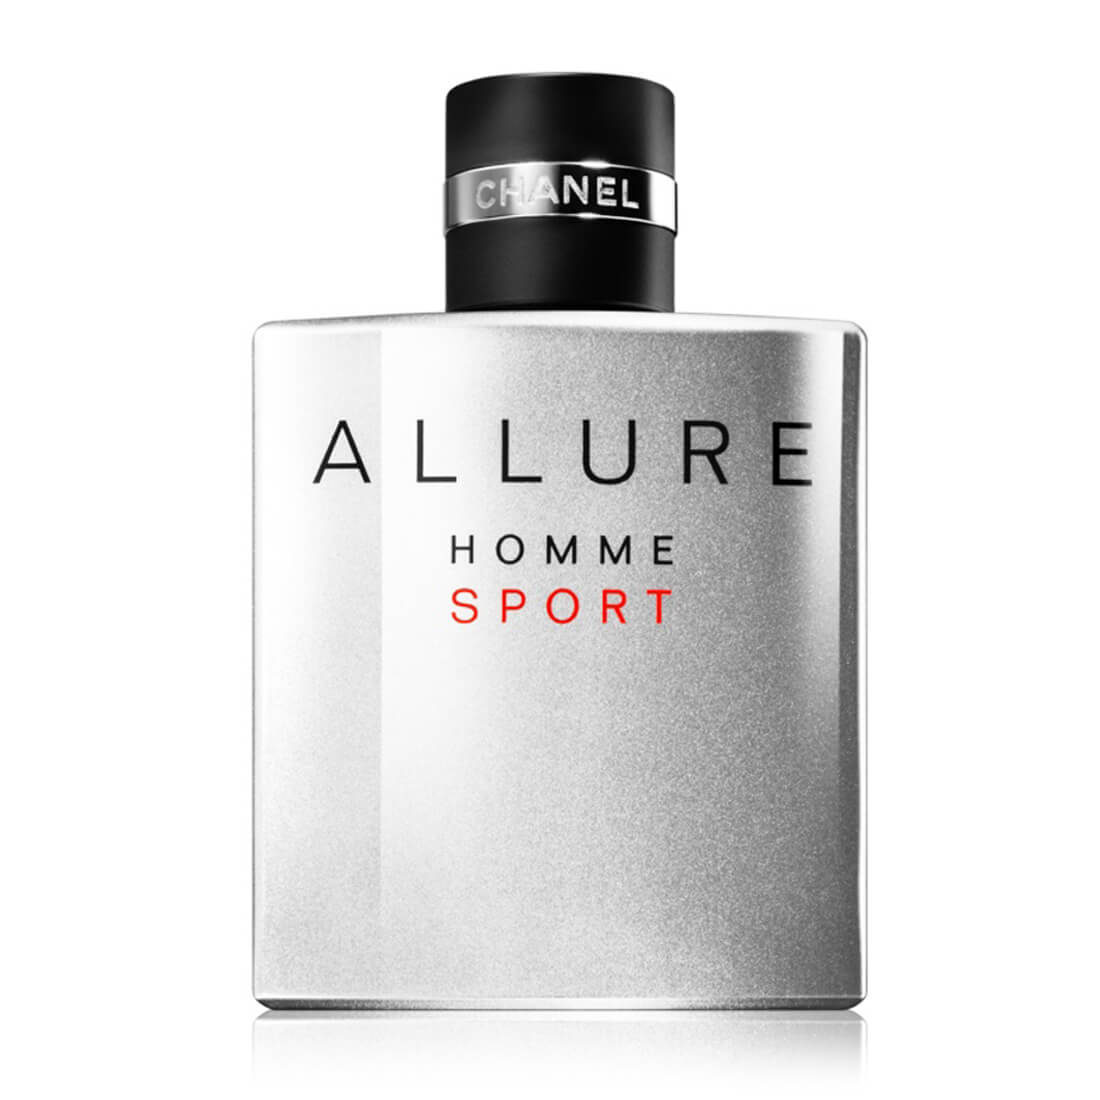 Chanel Allure Homme Sport Extreme For Men 100ml - EAU DE TOILETTE